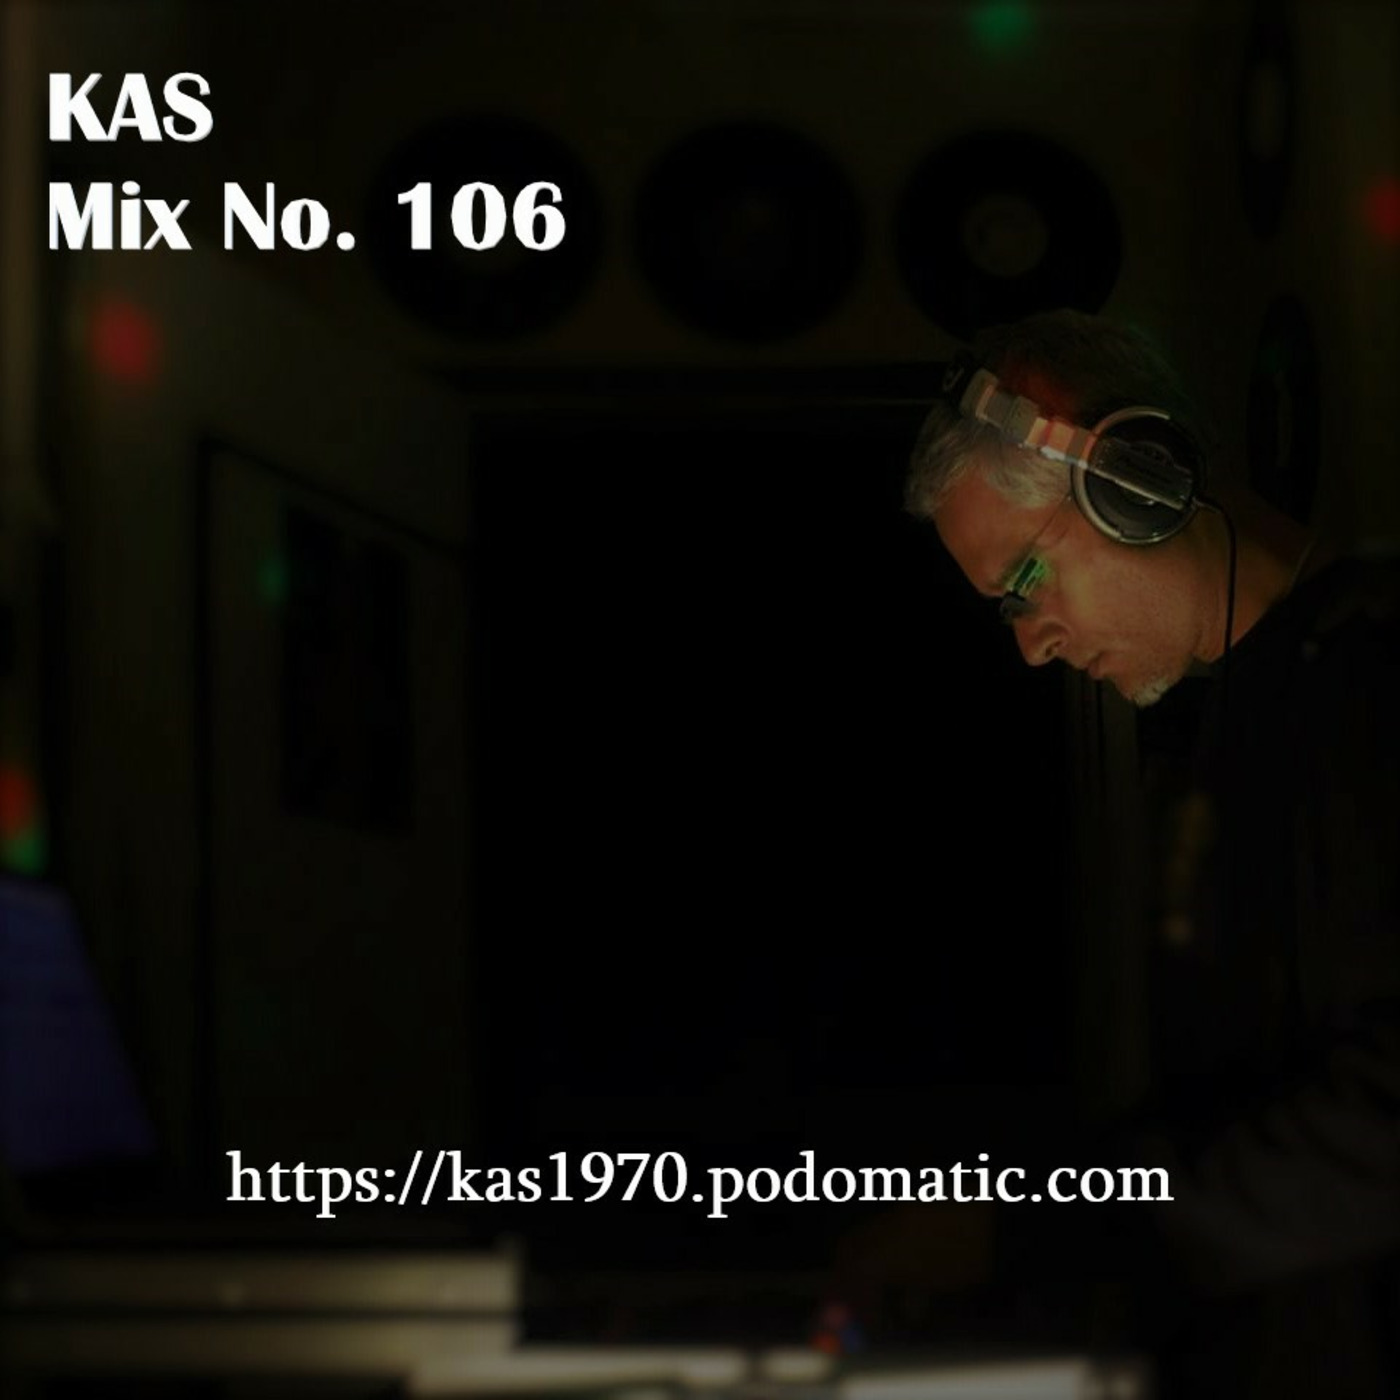 Episode 25: KAS - Podcast # 106